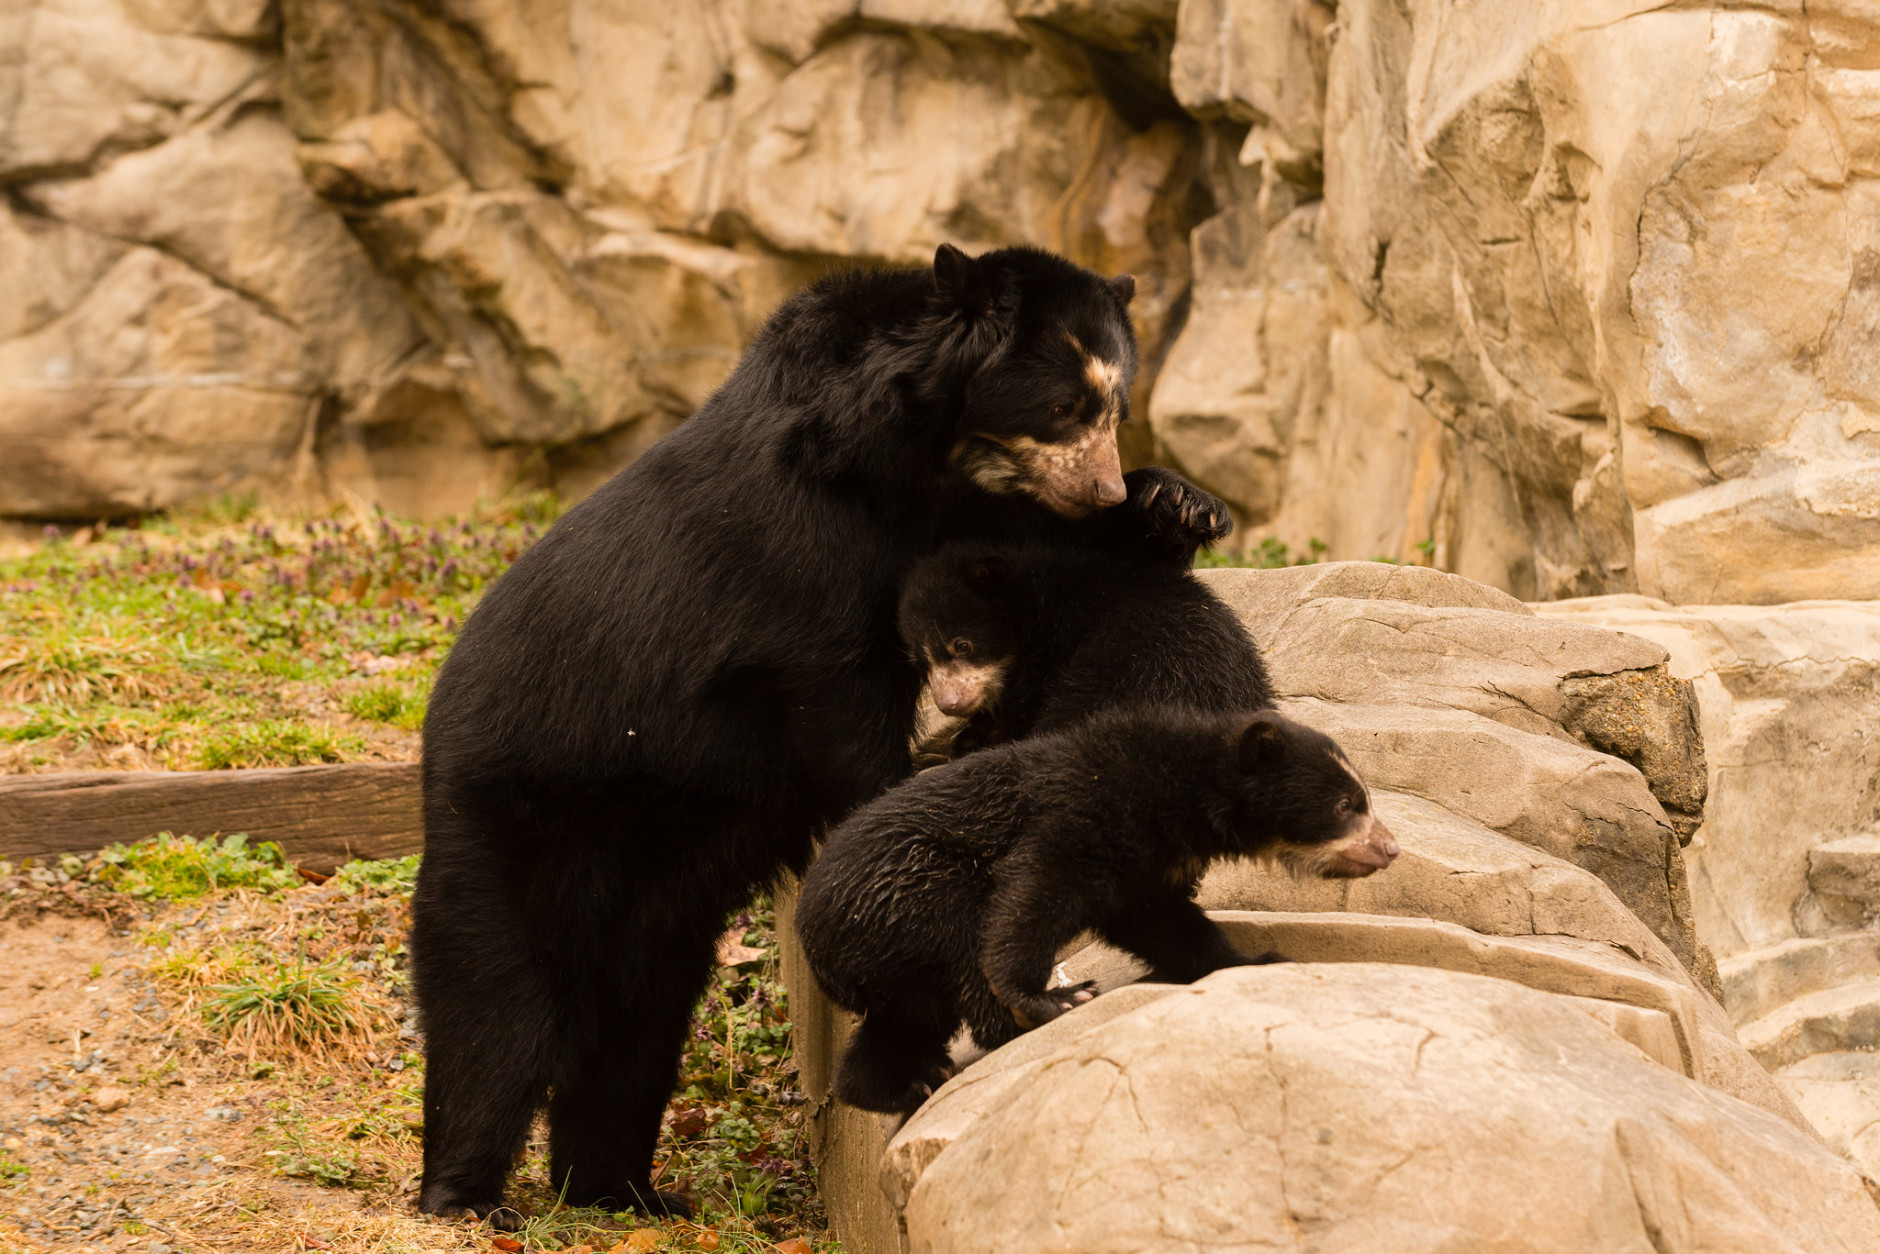 andrean bears at National Zoo